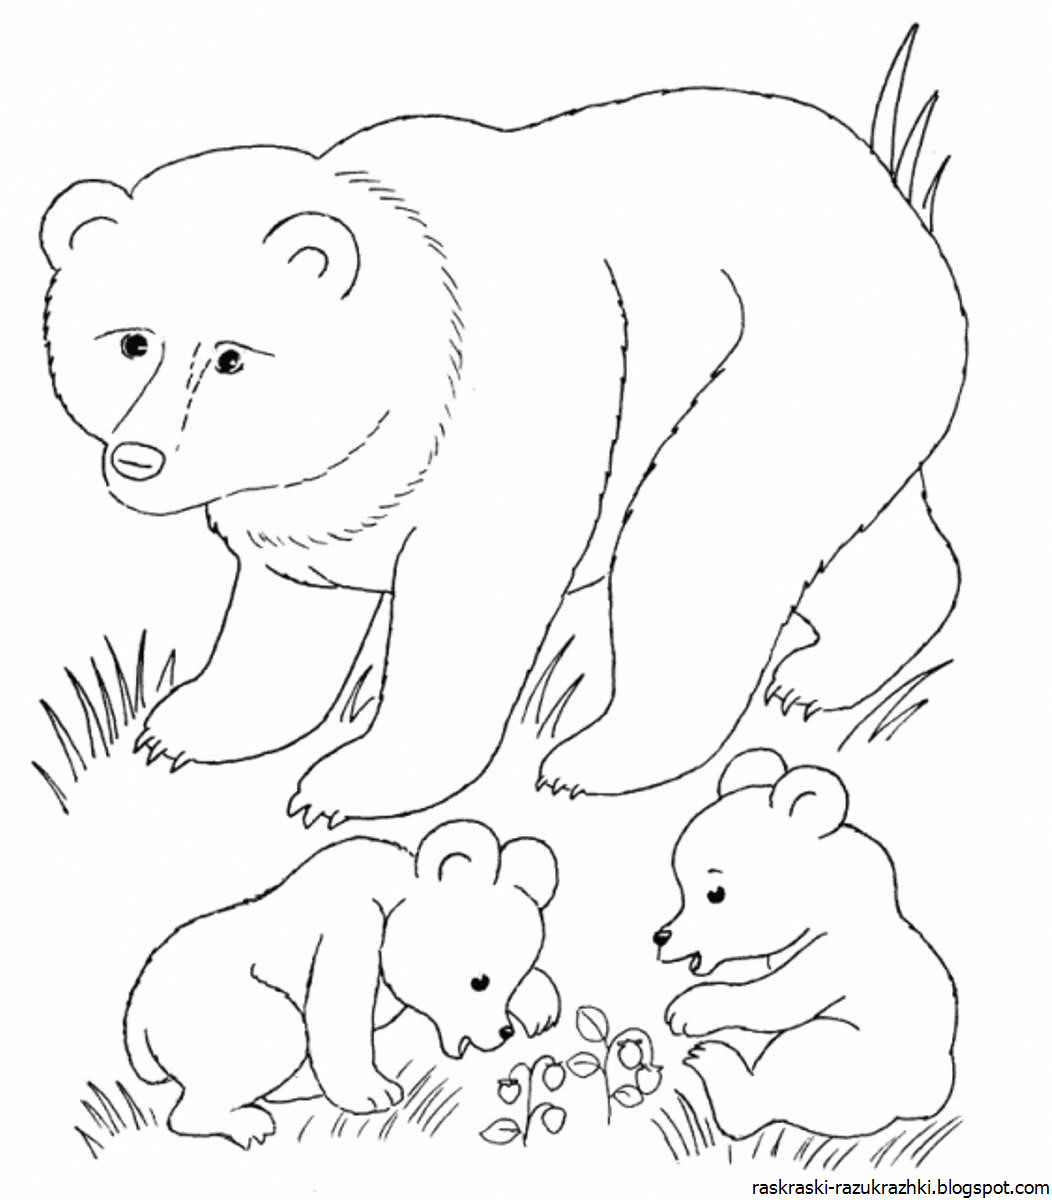 Распечатать раскраску дикие животные. Раскраски животных для детей. Медведь раскраска. Раскраска "Дикие животные". Лесные животные раскраска для детей.